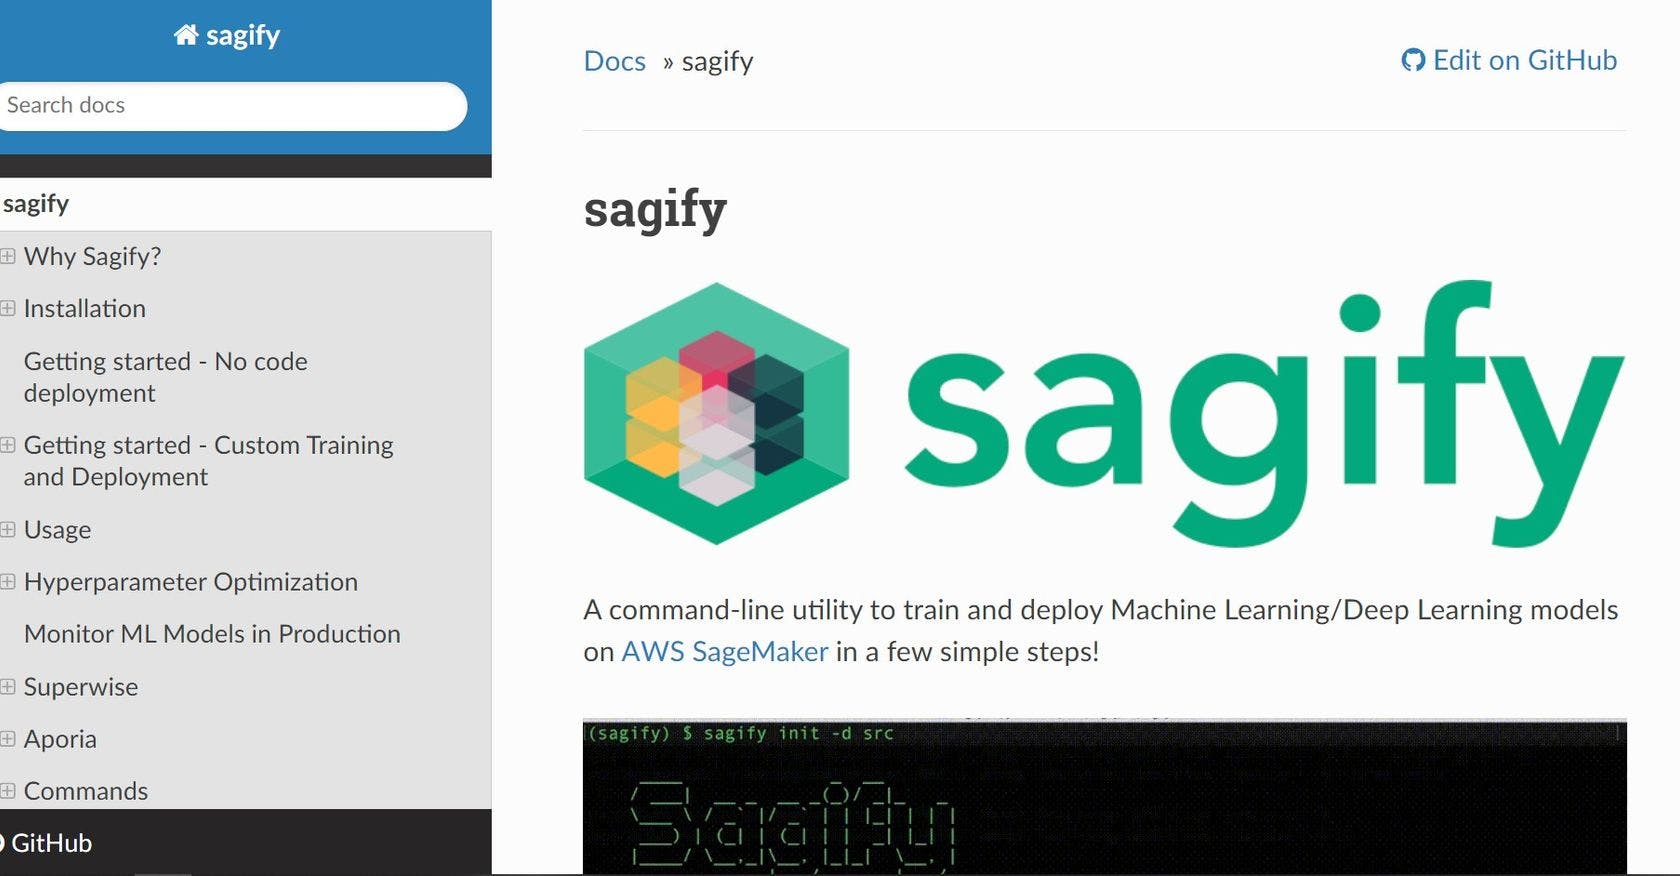 Sagify